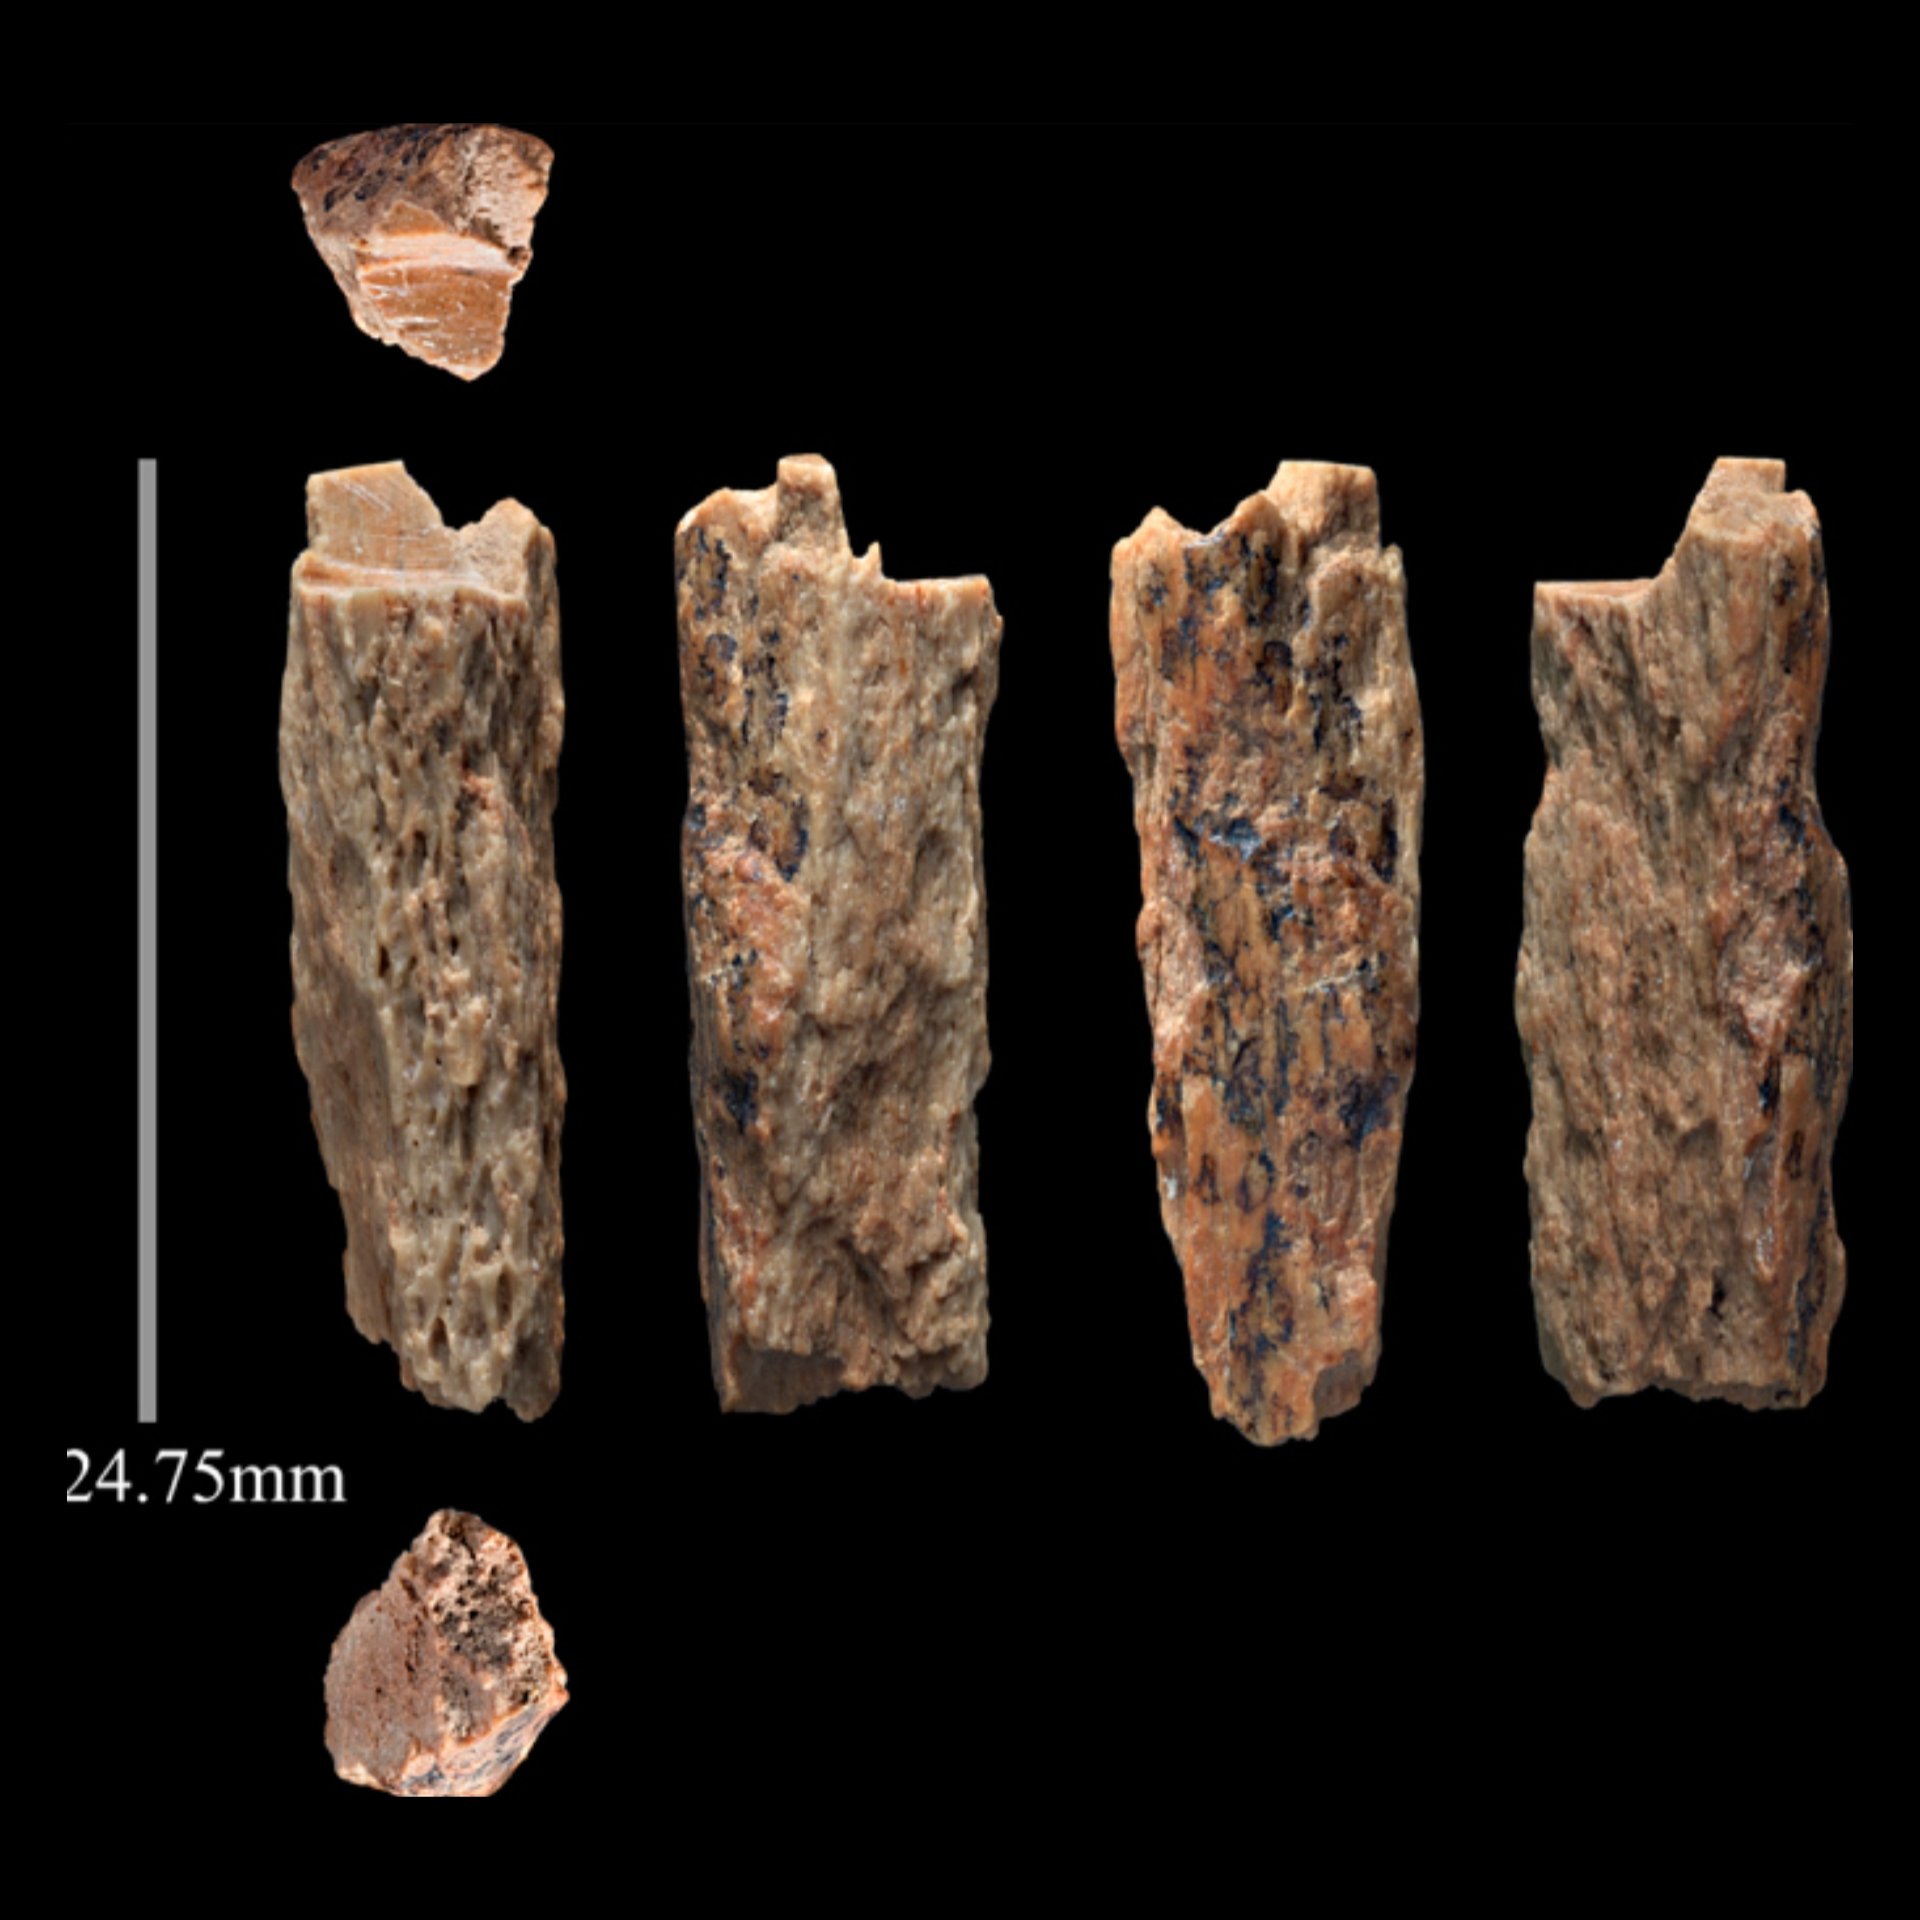 Denny, záhadné dítě z doby před 90,000 1 lety, jehož rodiče byli dva různé lidské druhy XNUMX